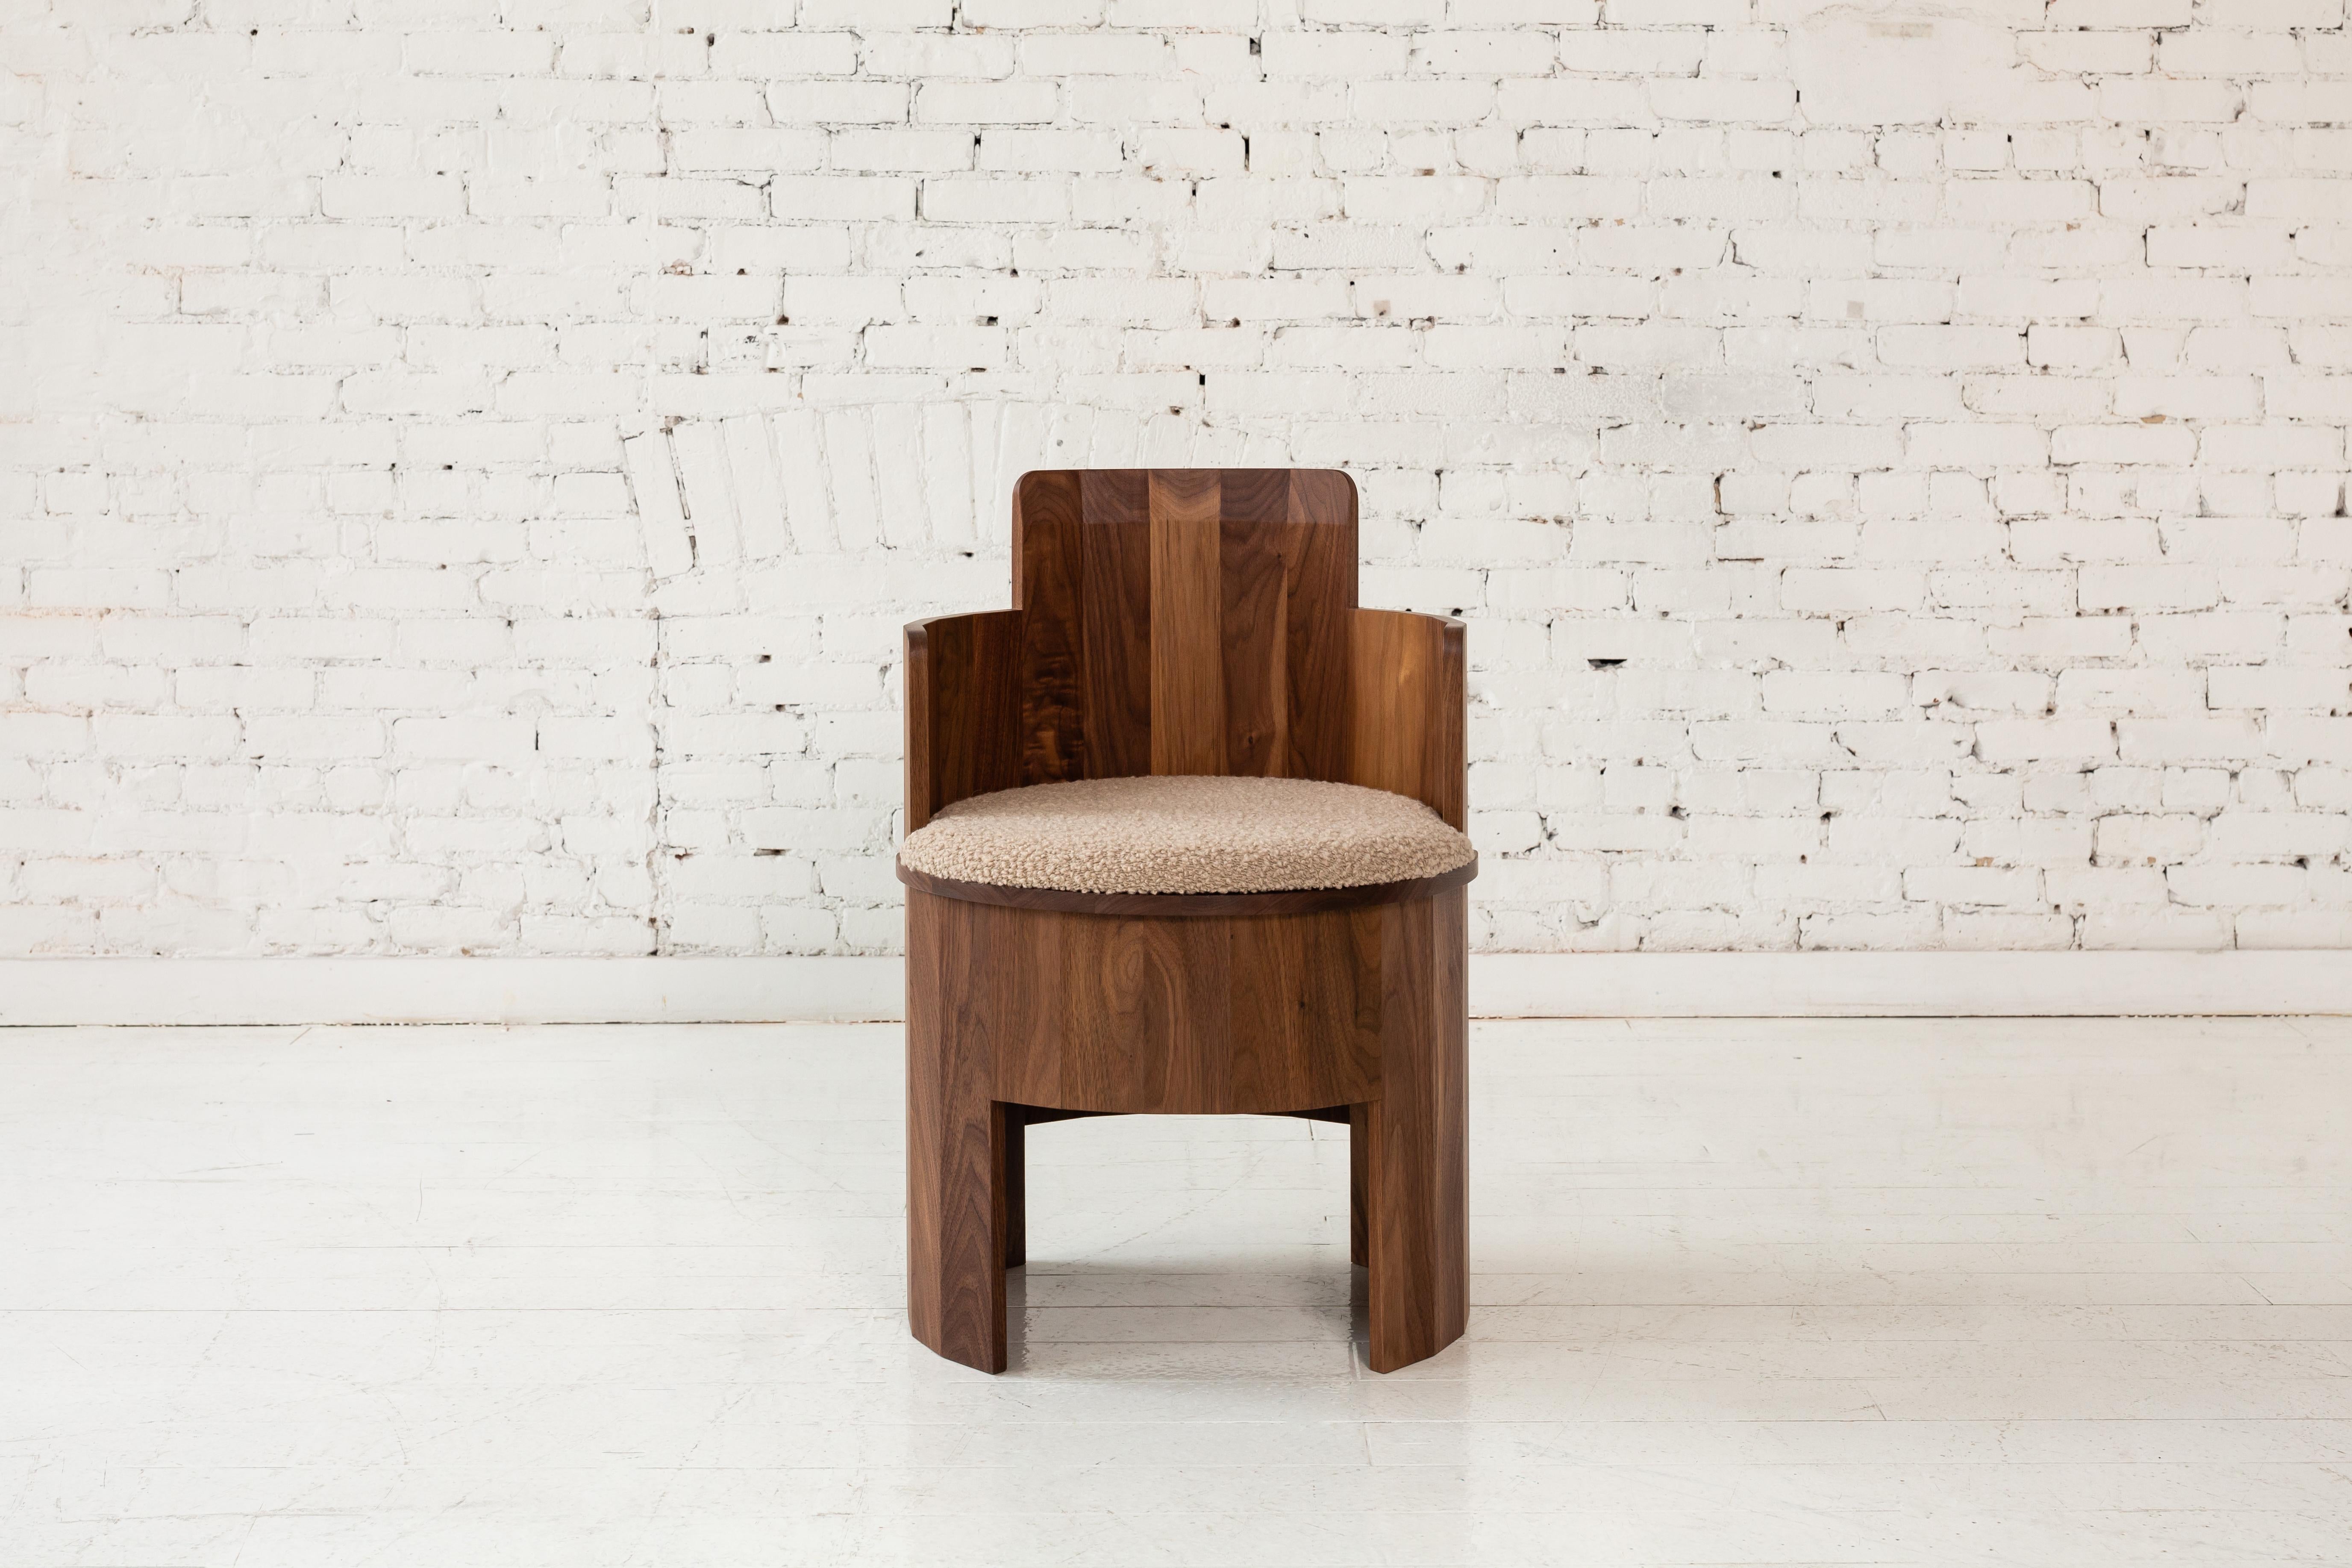 Cette chaise latérale en bois fait partie de la nouvelle collection de salle à manger Cooperage. Chaque pièce comporte de grands éléments ronds à facettes qui, avec son homonyme, font référence au métier de tonnelier traditionnel de la fabrication